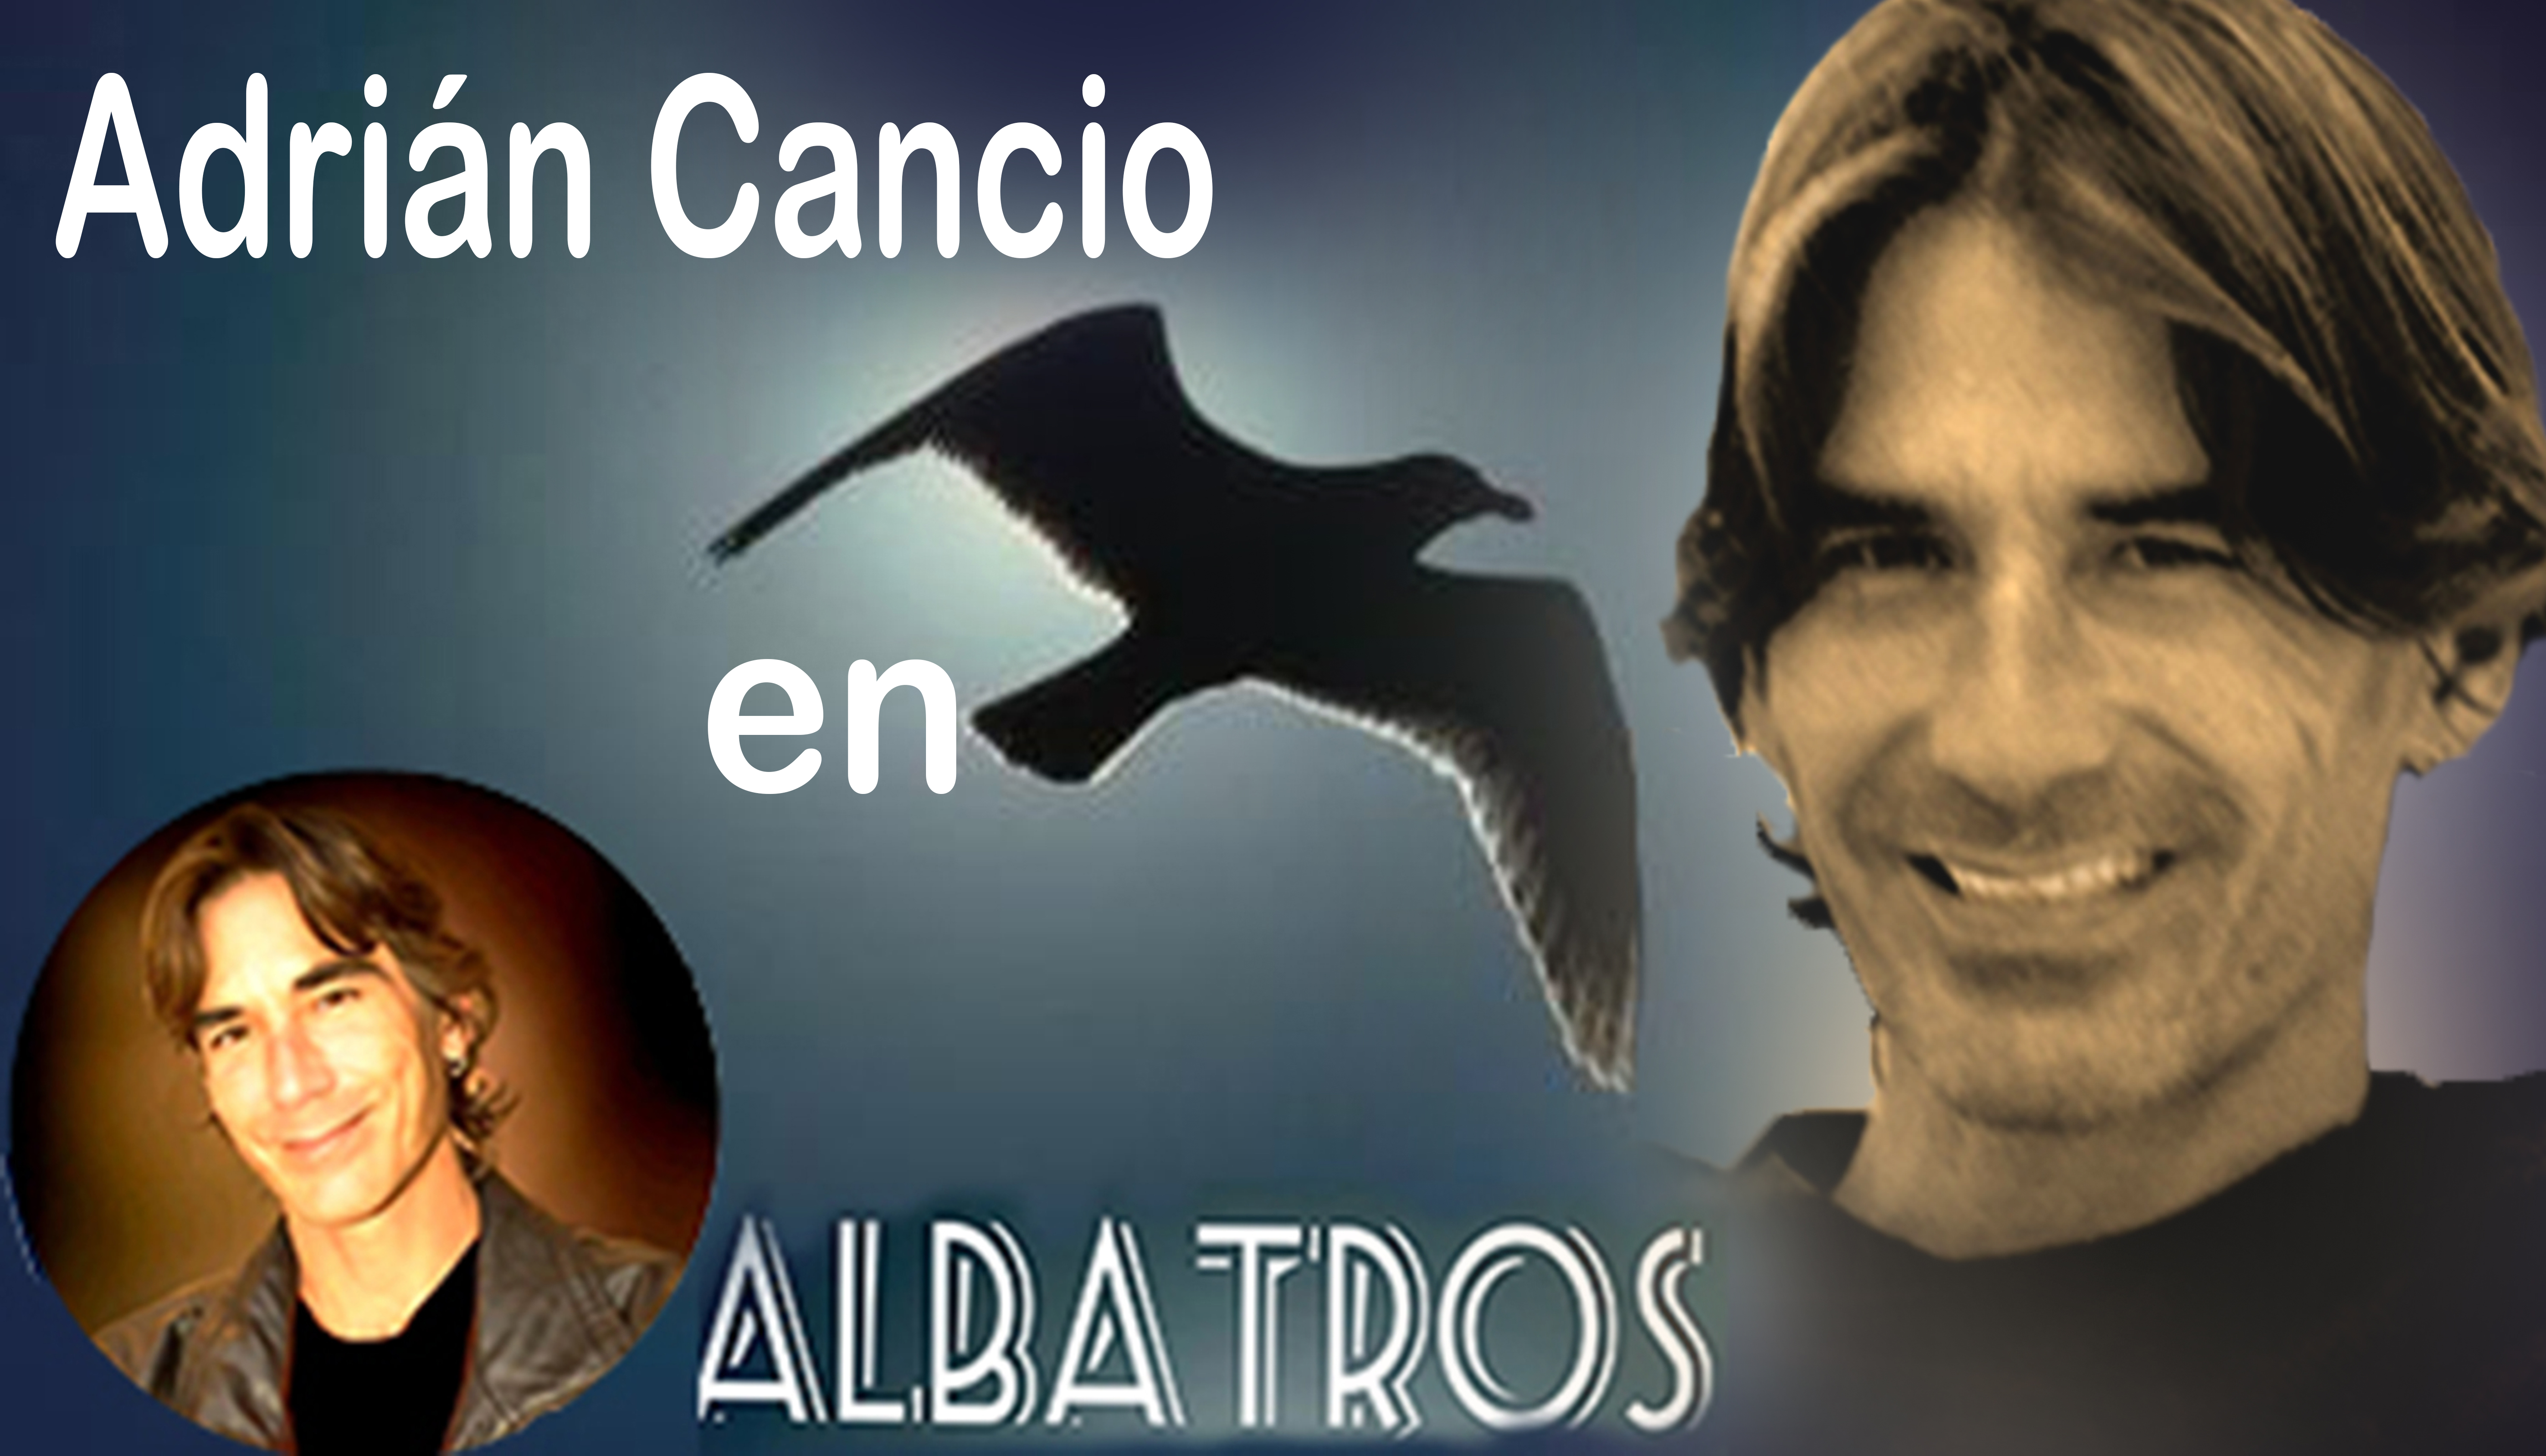 https://0201.nccdn.net/1_2/000/000/09a/968/adri--n-cancio-en-albatros.jpg